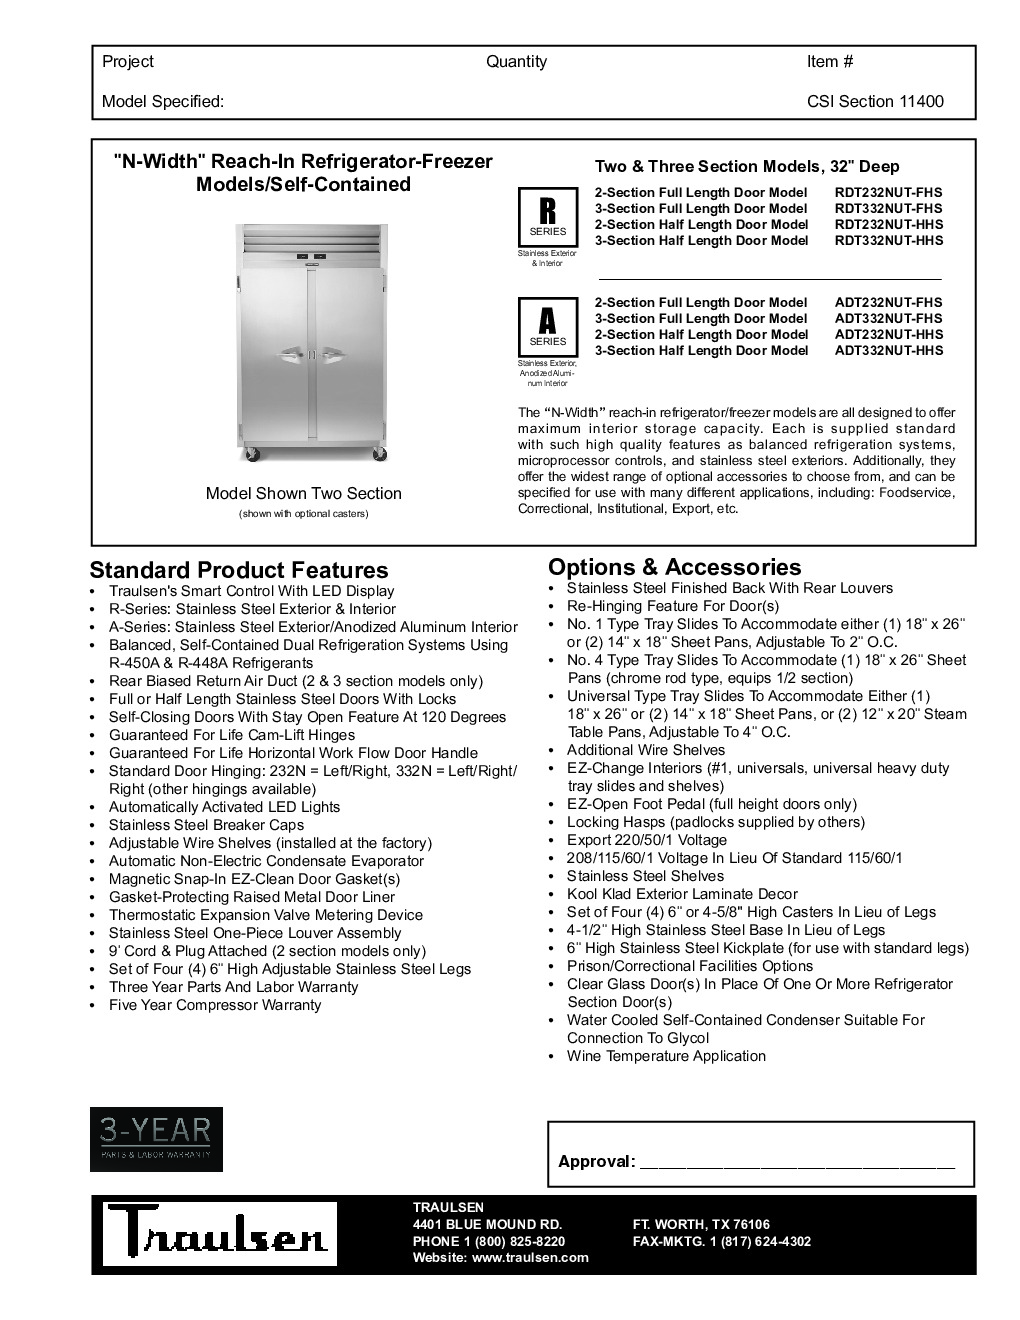 Traulsen RDT332NUT-HHS Reach-In Refrigerator Freezer